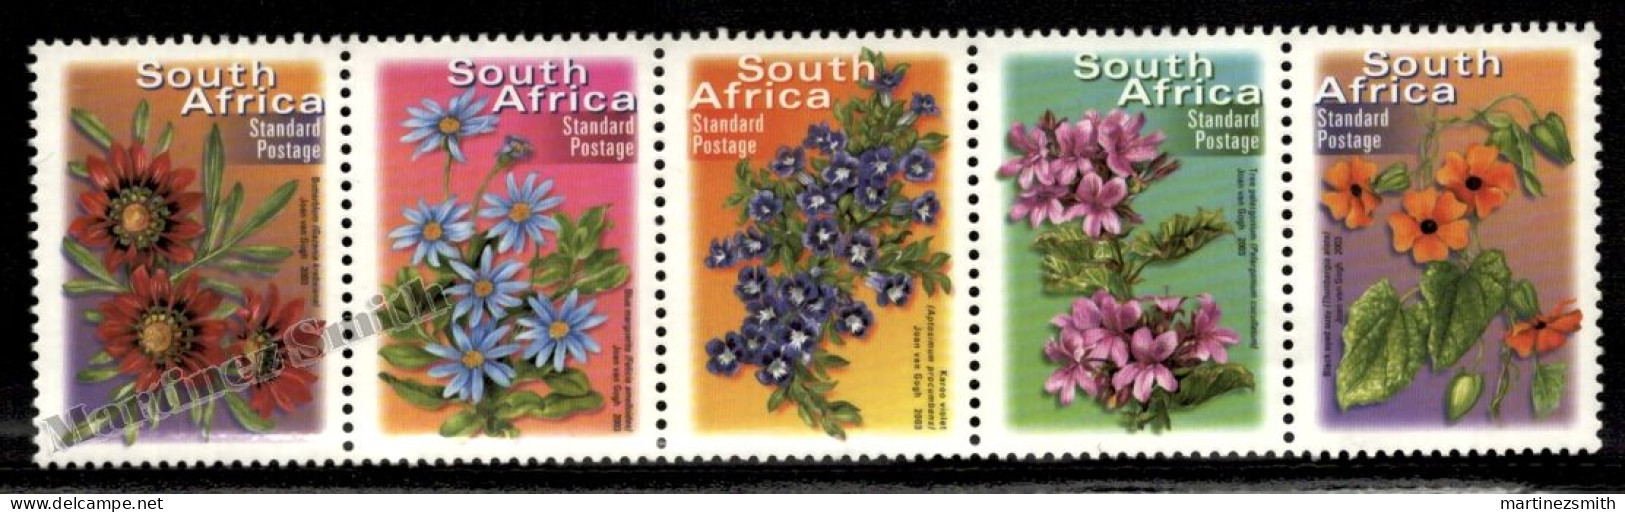 South Africa - Afrique Du Sud - Africa Sur 2001 Yvert  1159 - 63 -Definitive, Flowers - 2007 Reprint - MNH - Nuovi